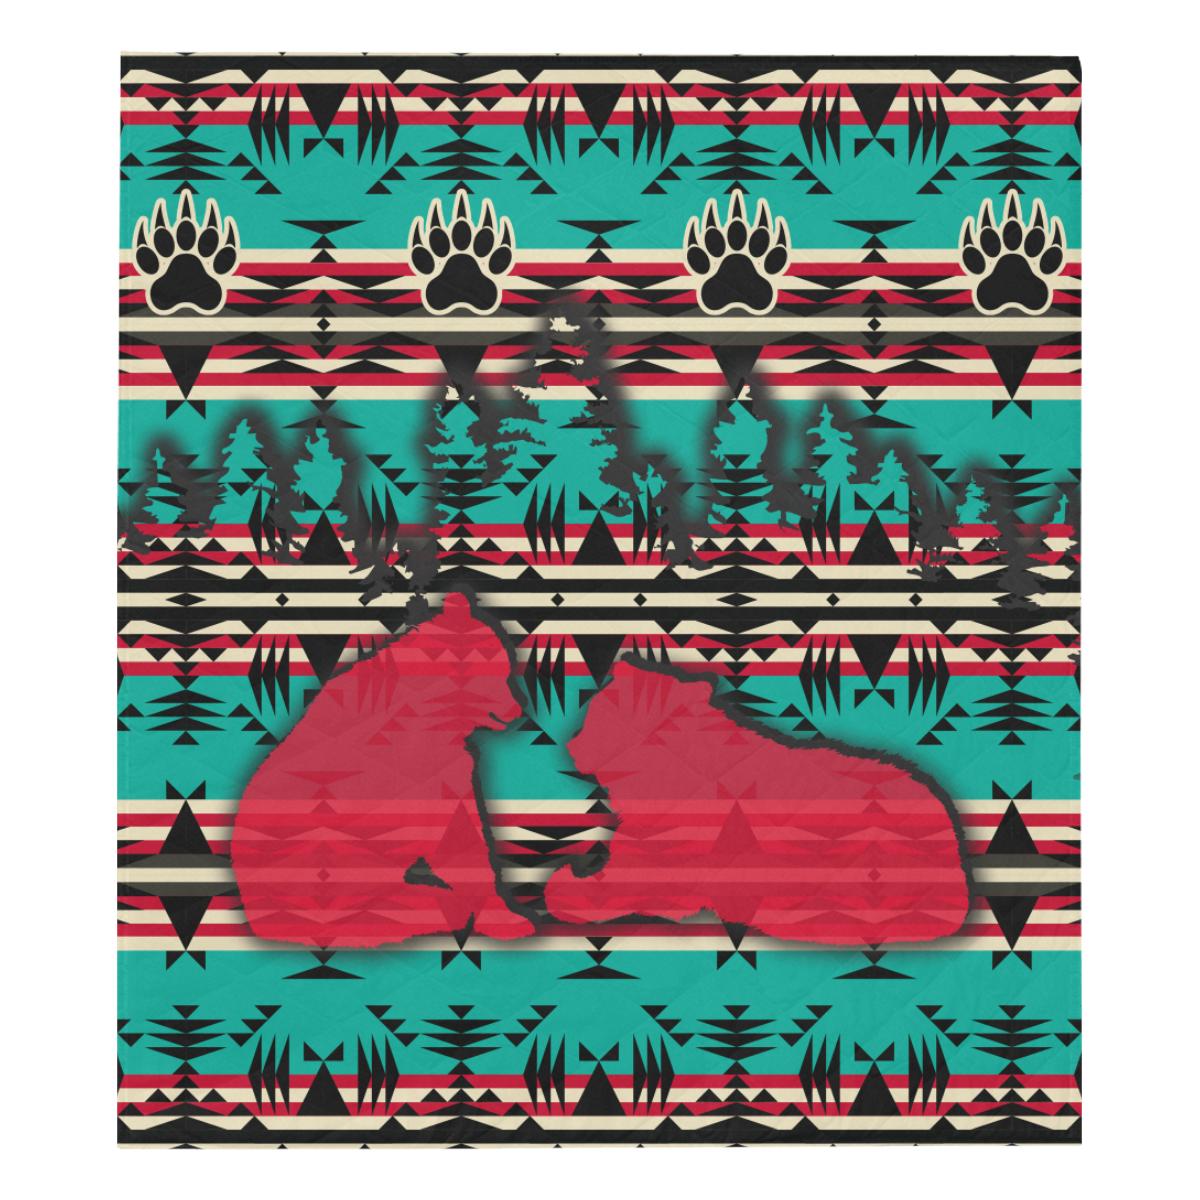 Northern Bear Quilt 70"x80" blanket e-joyer 